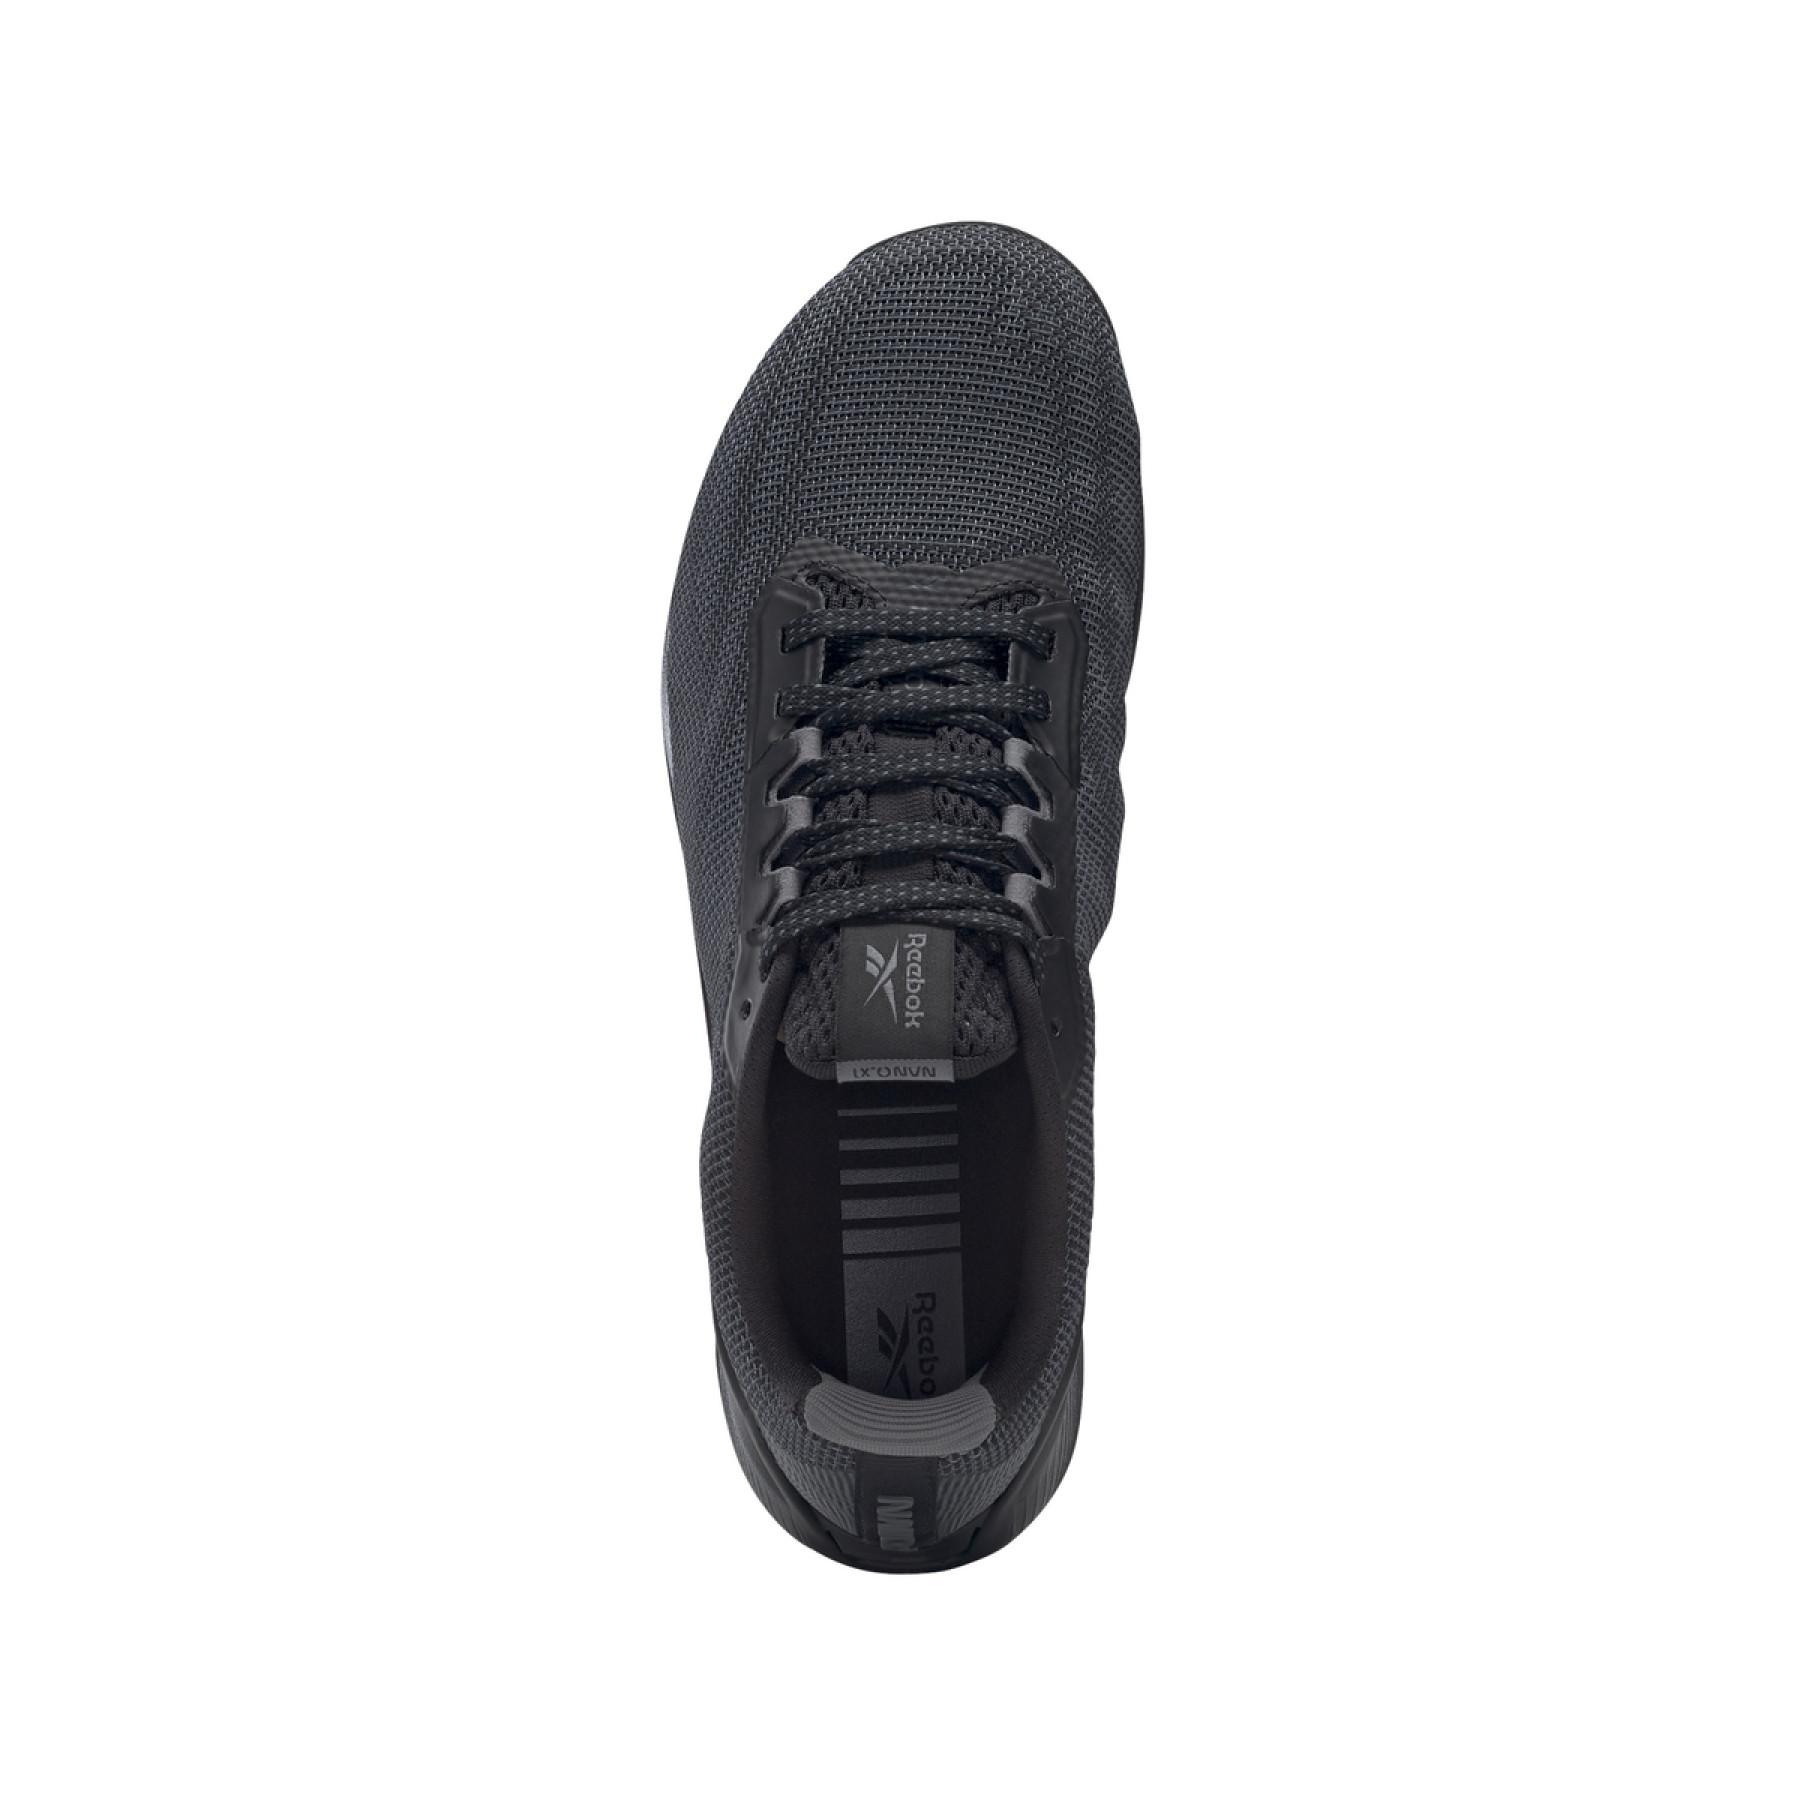 Sapatos Reebok Nano X1 Grit